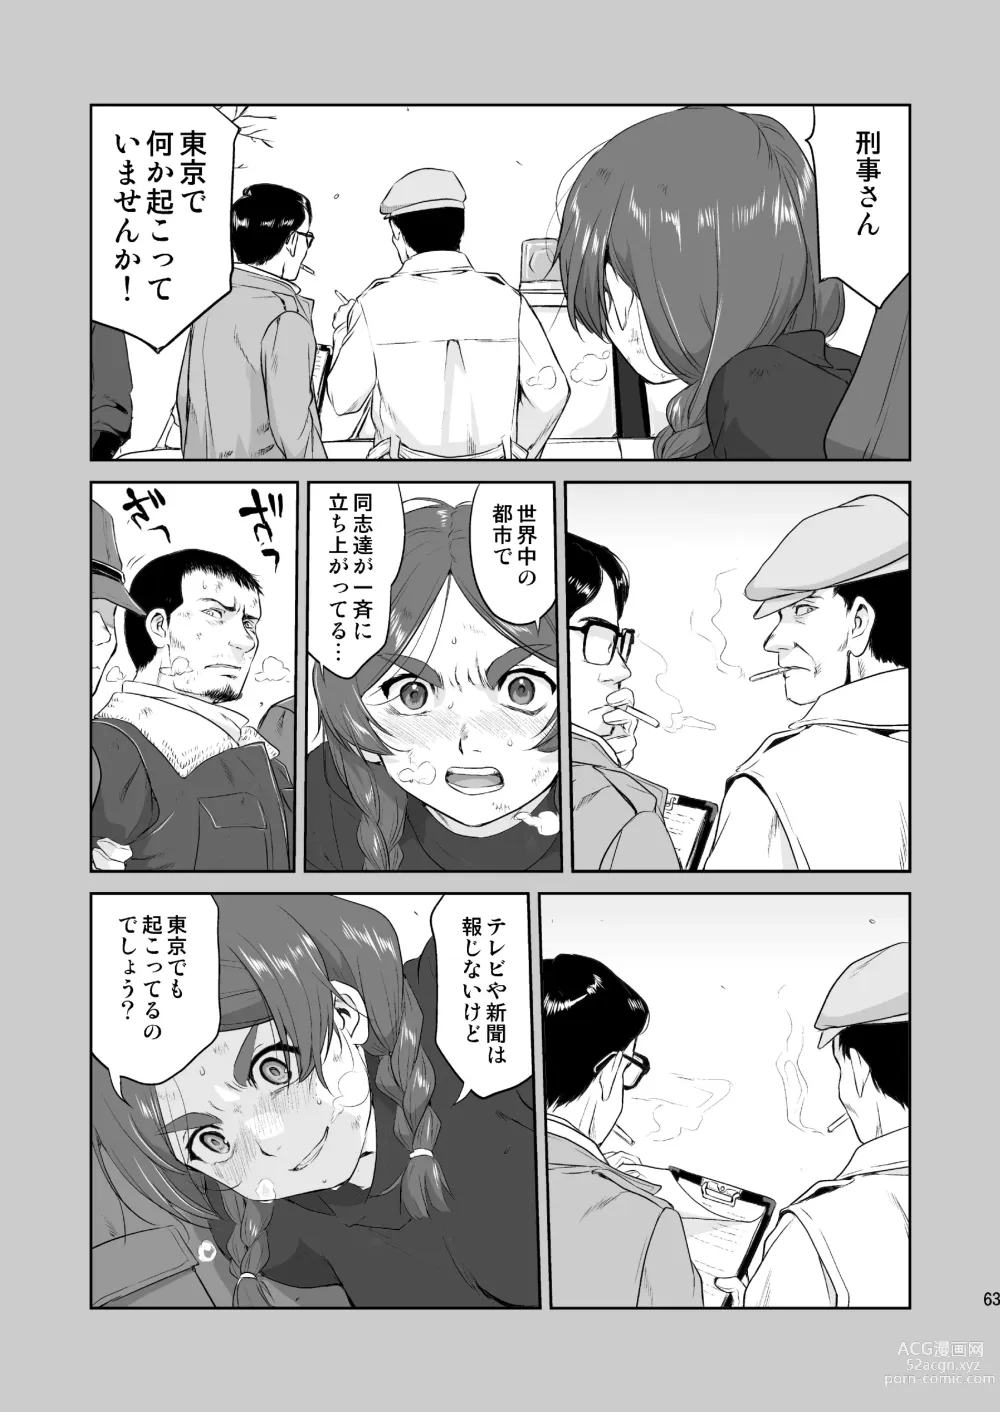 Page 63 of doujinshi Hikari no Ame